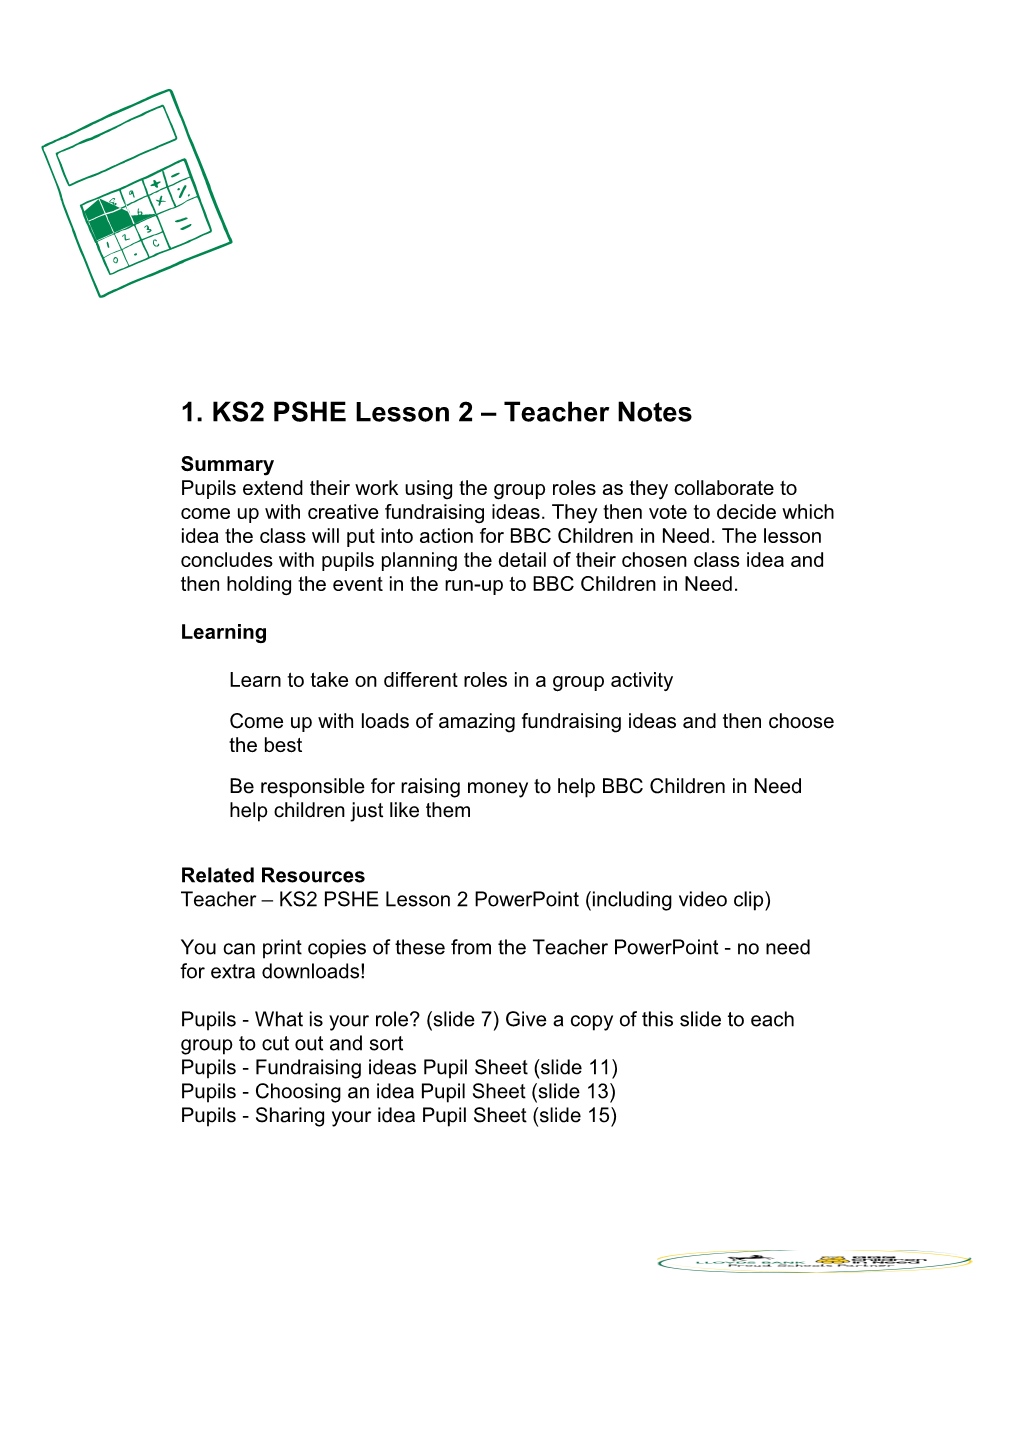 KS2 PSHE Lesson 2 Teacher Notes